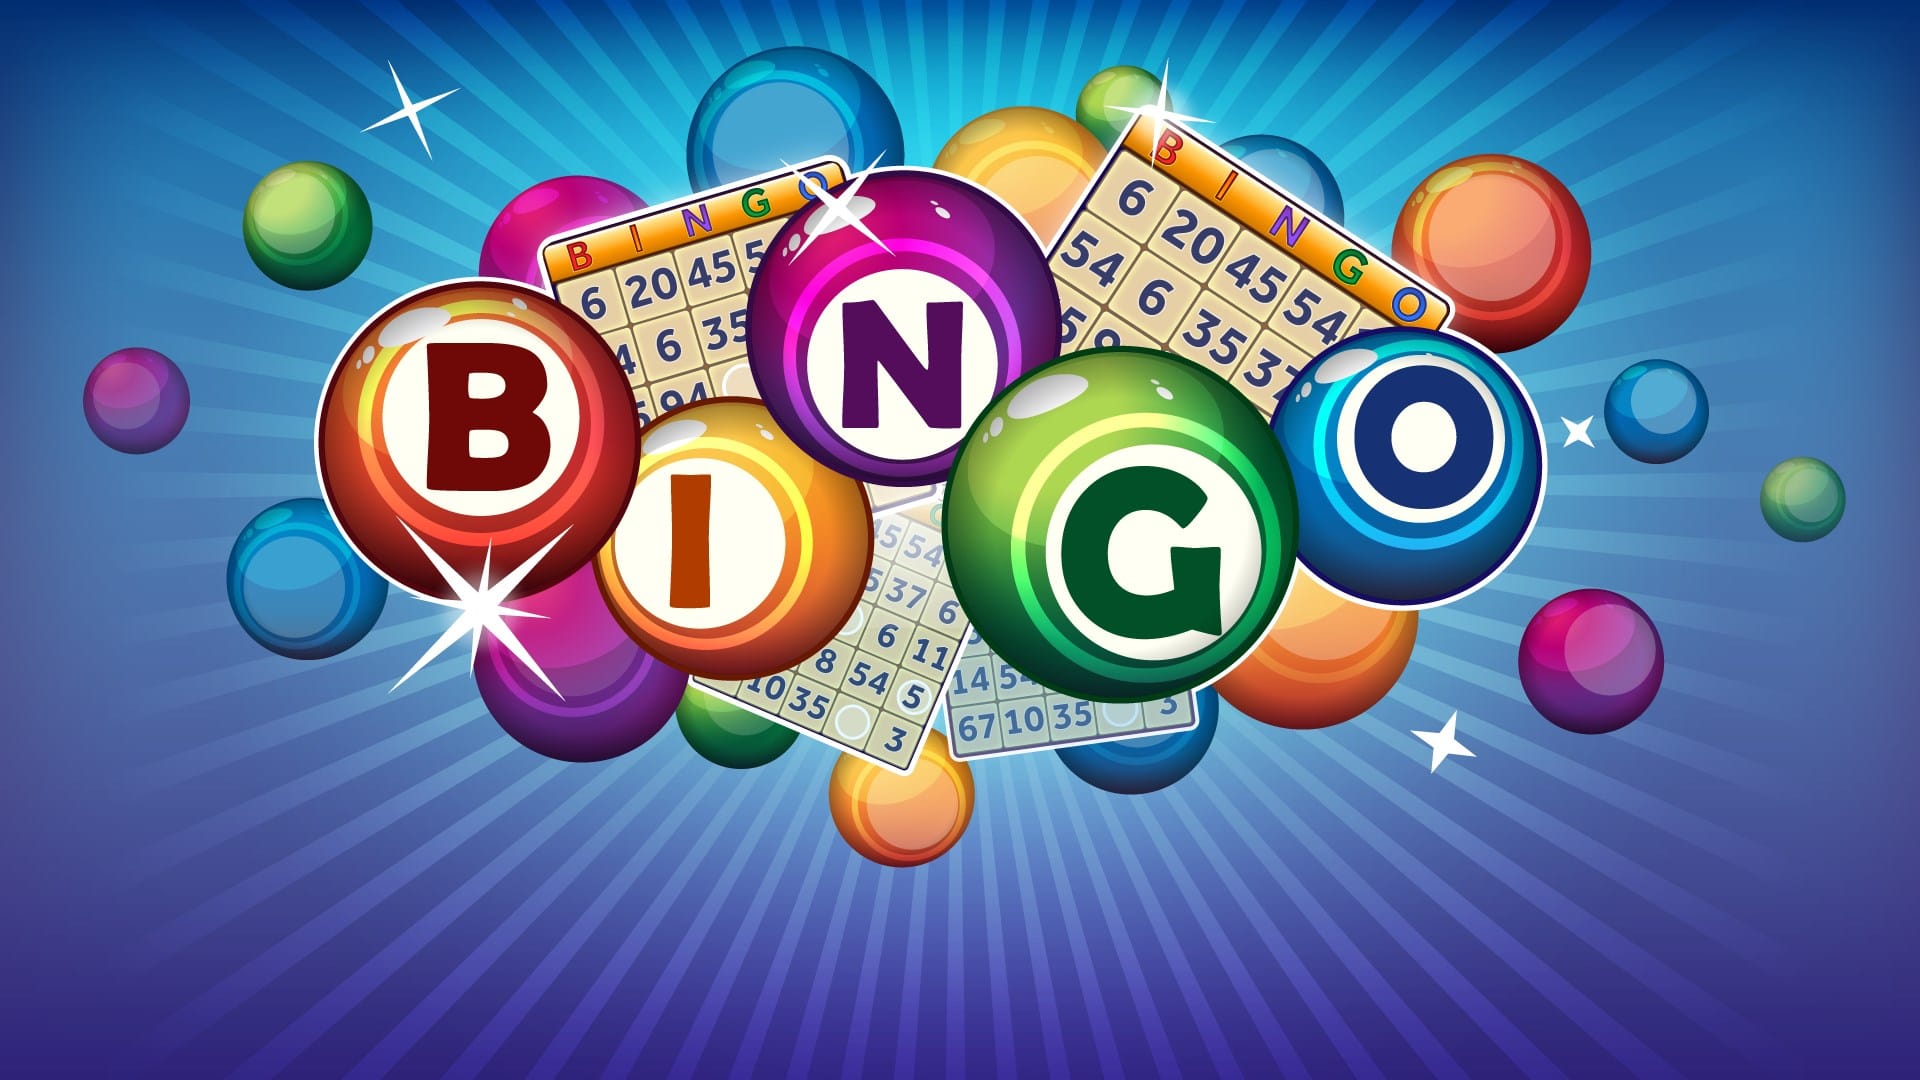 How to play Online Bingo?